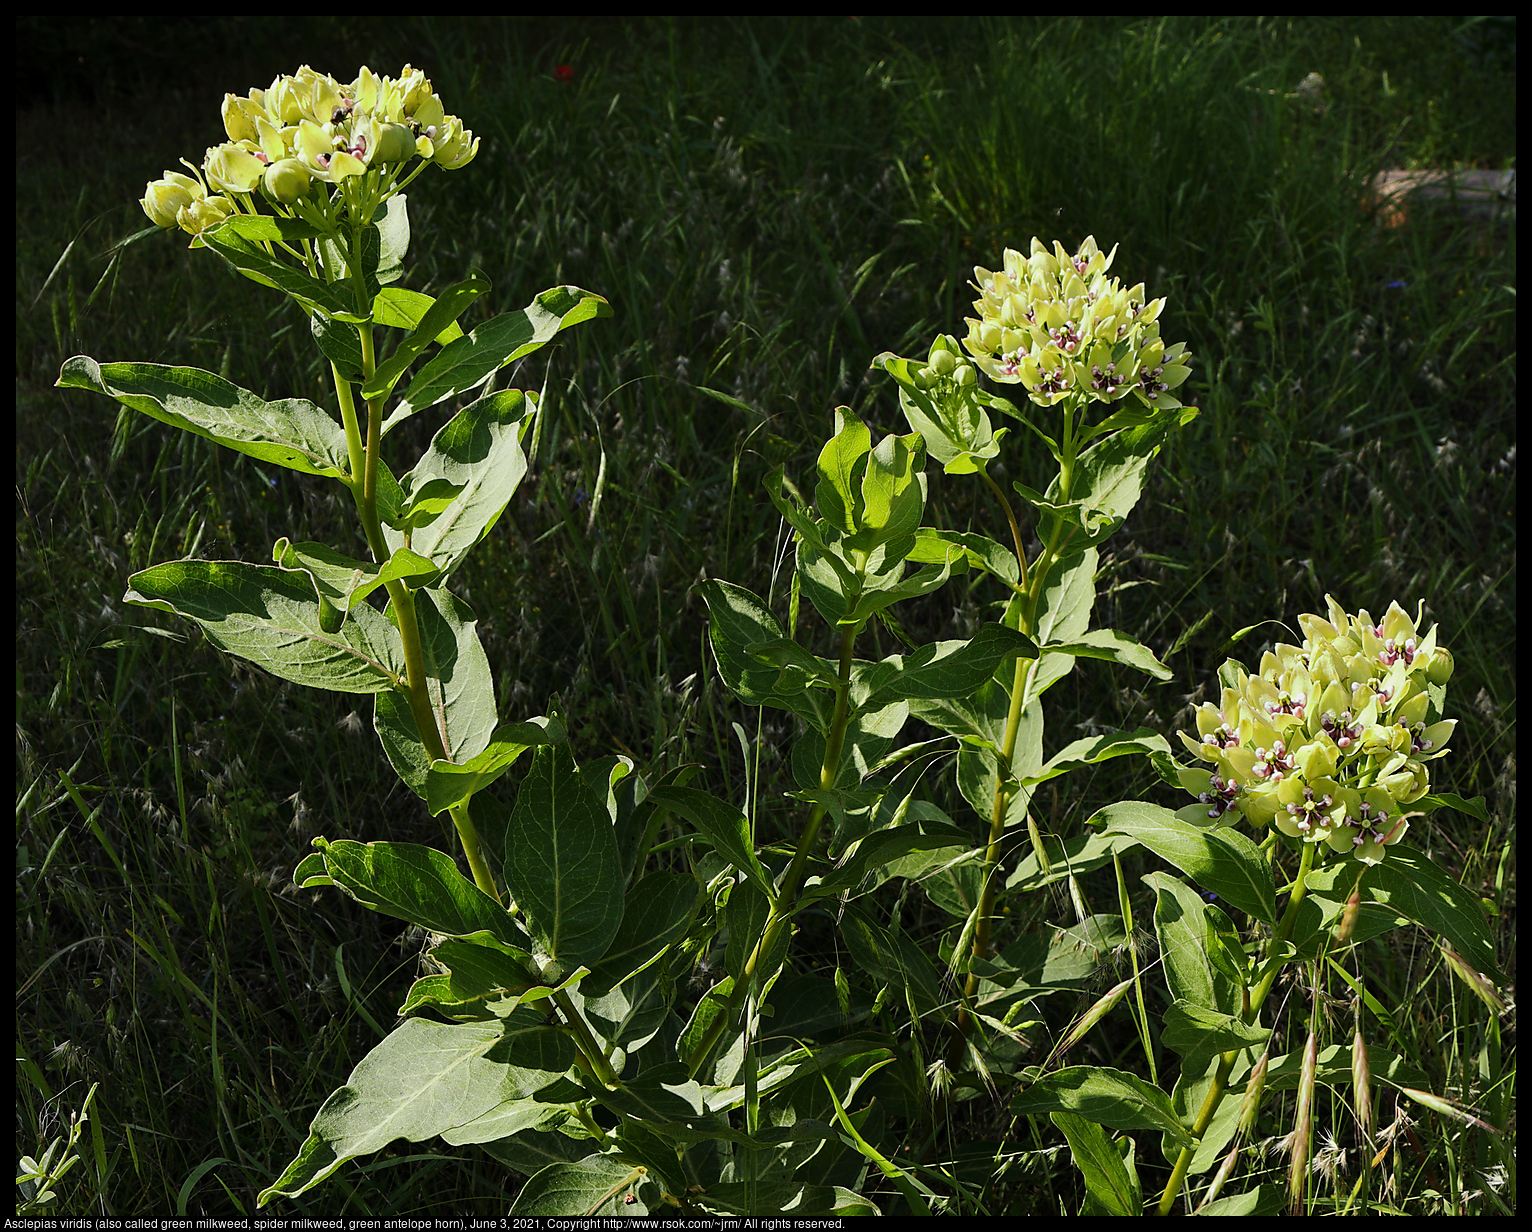 Asclepias viridis (also called green milkweed, spider milkweed, green antelope horn), June 3, 2021